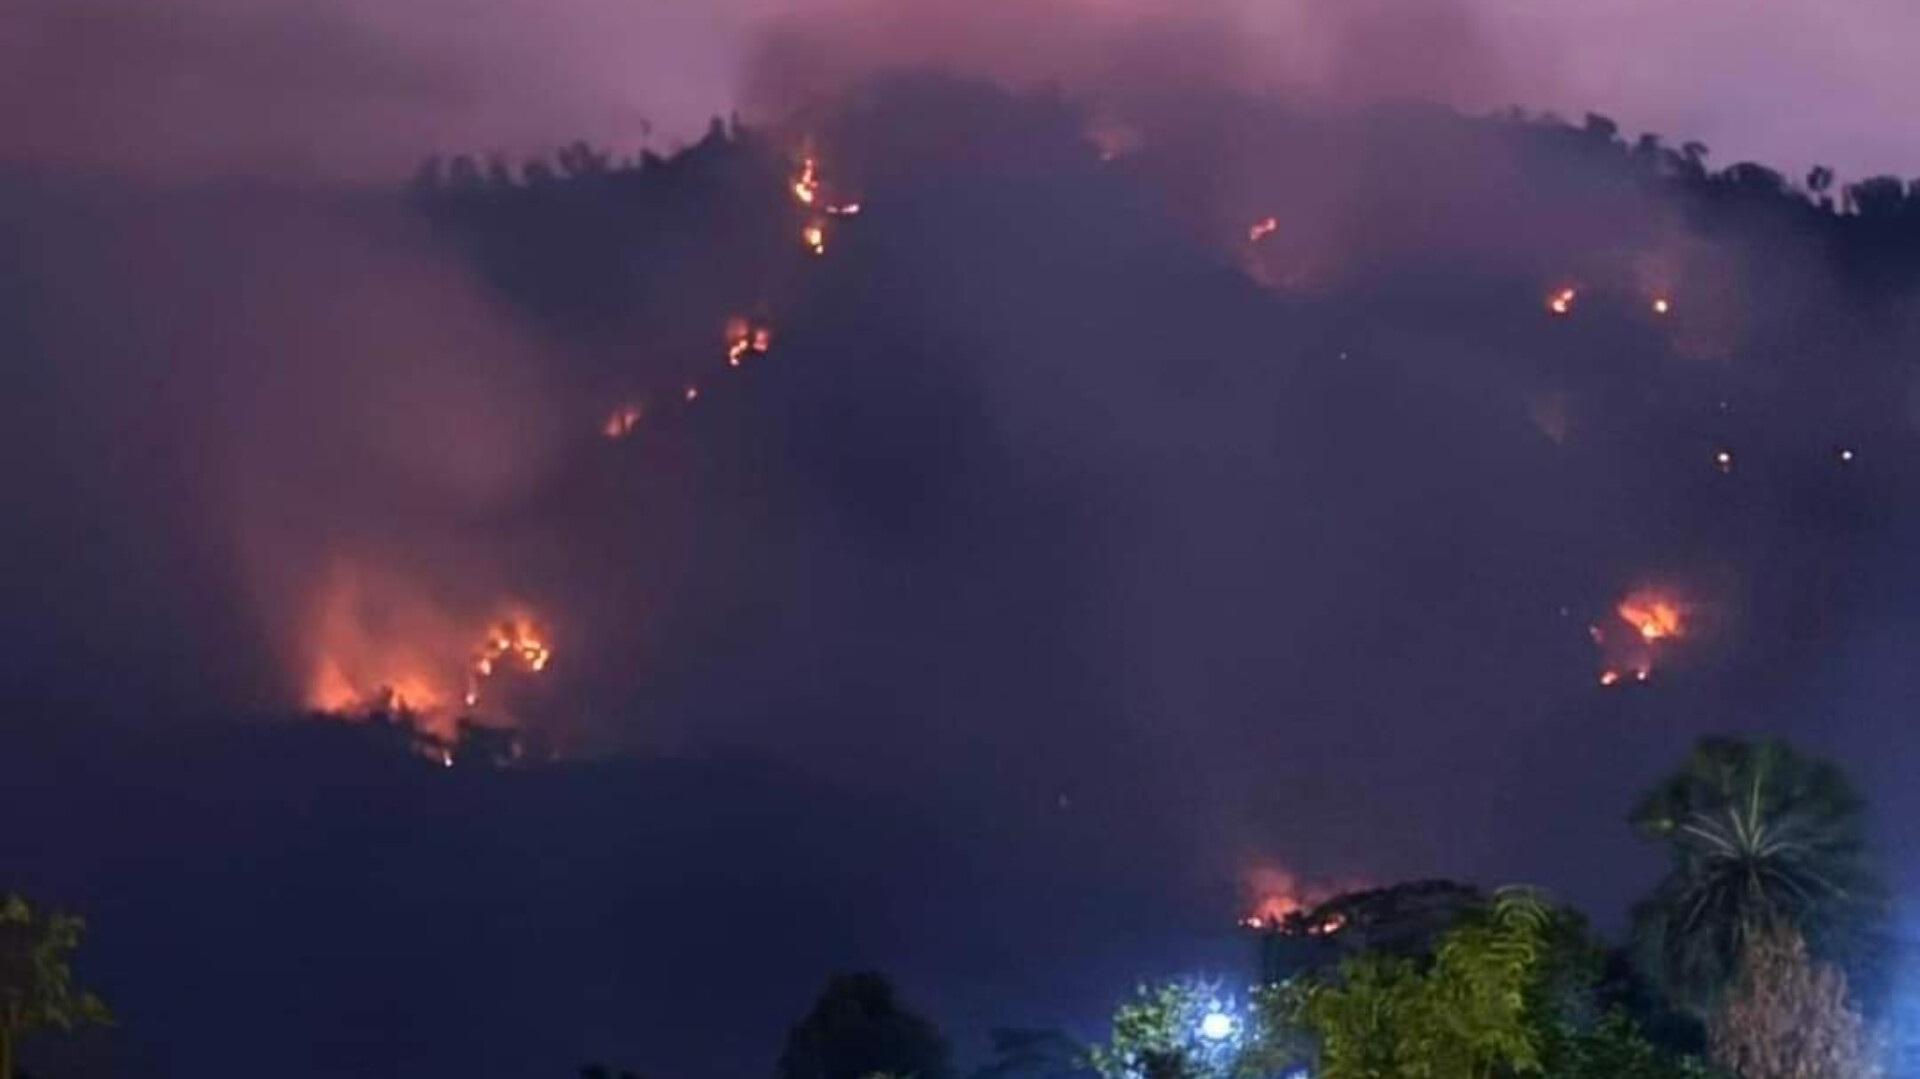 Đang cháy lớn trên núi Cô Tô kèm nhiều tiếng nổ lớn như bom